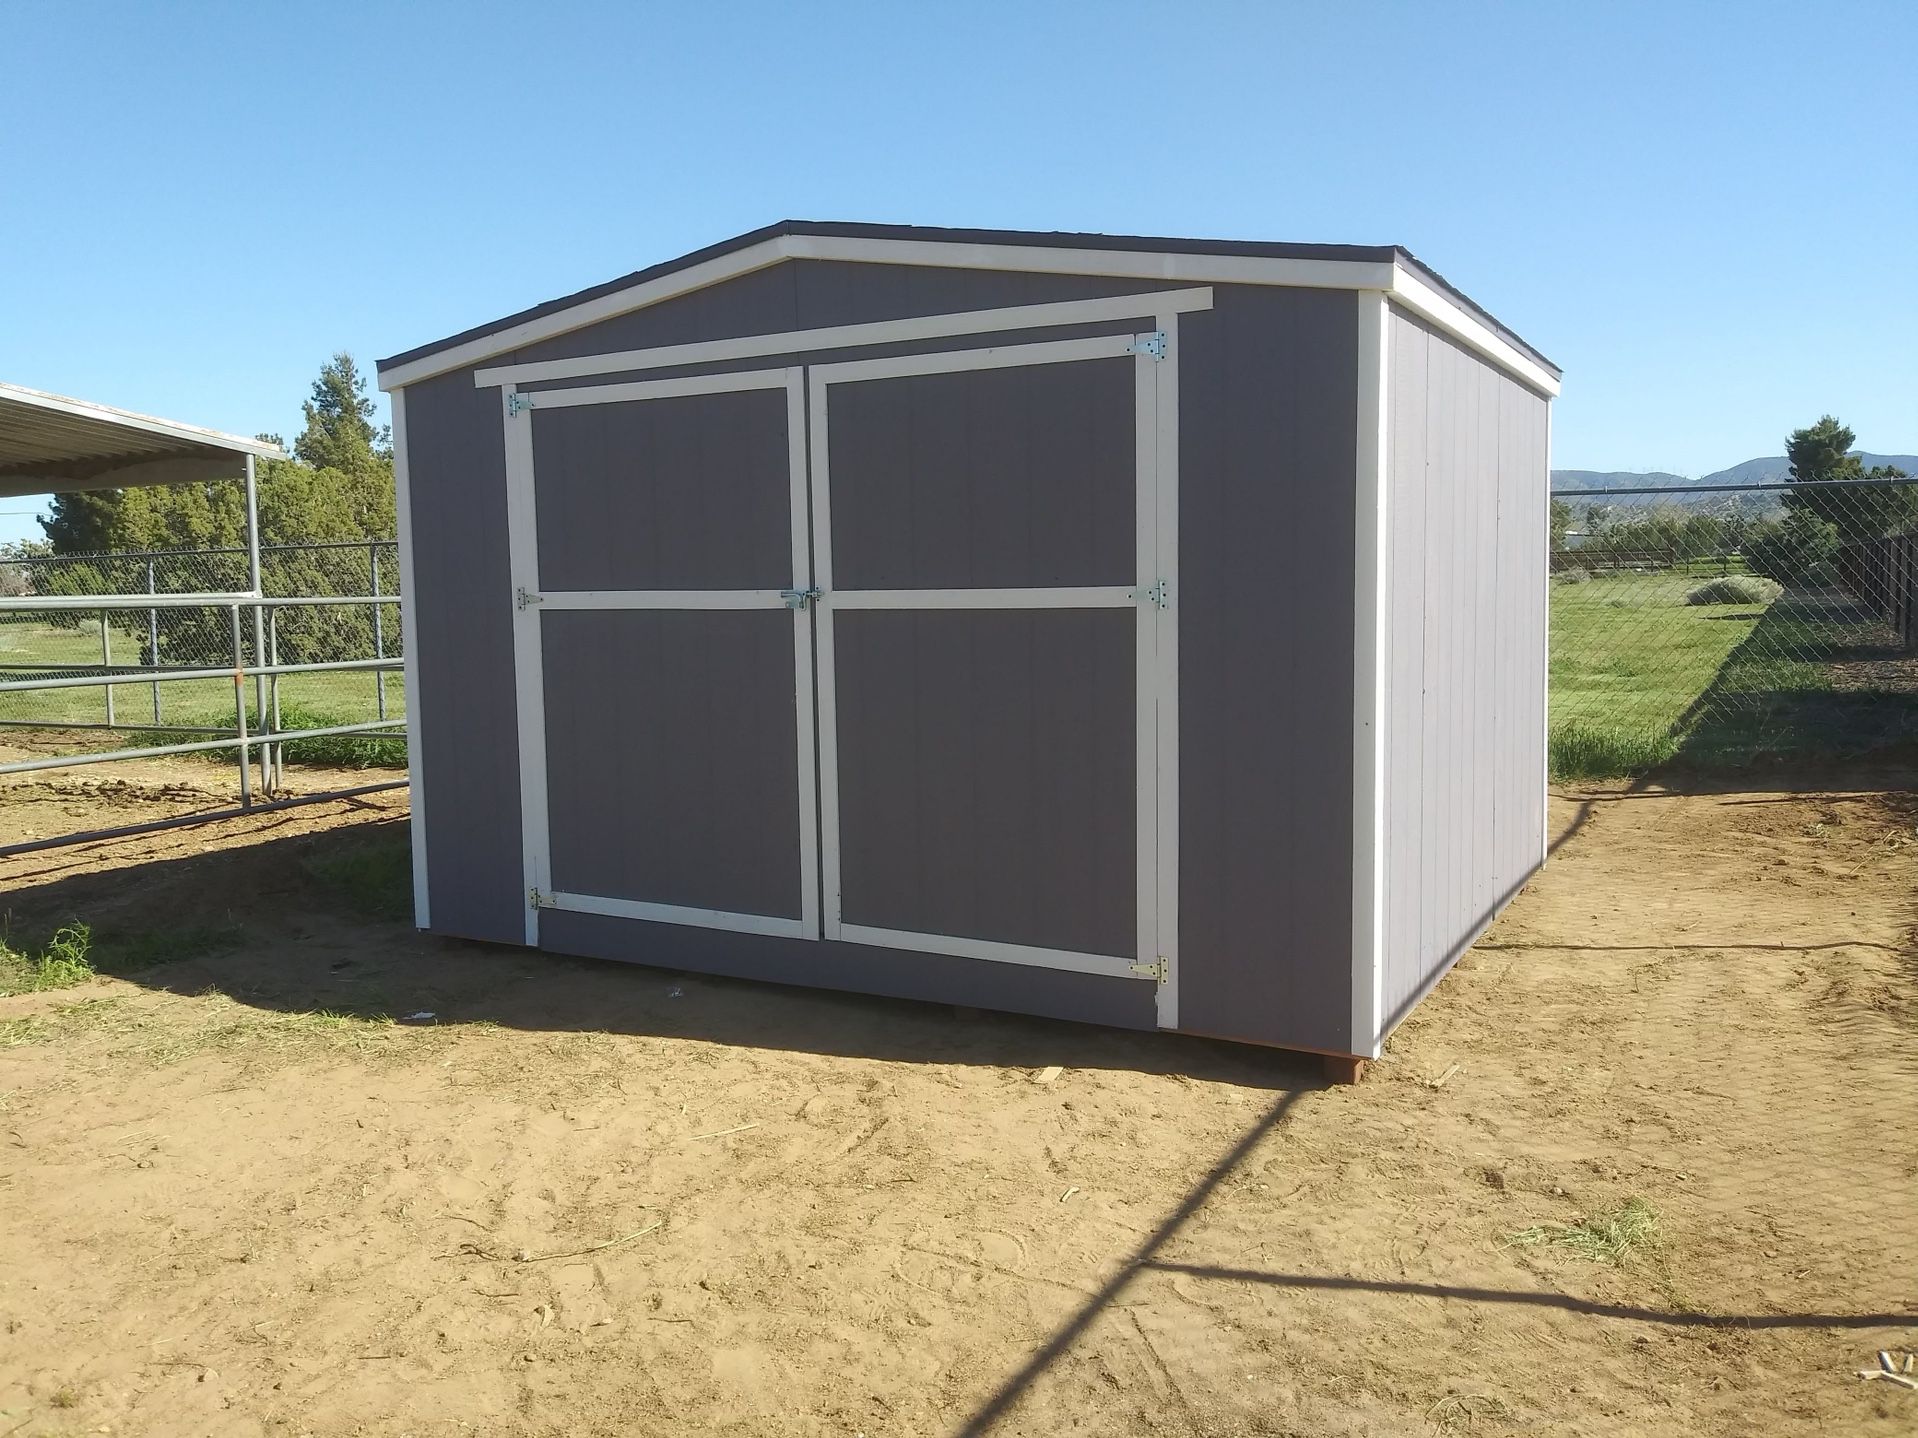 12x10x8 storage, shed, casita, tiny home.